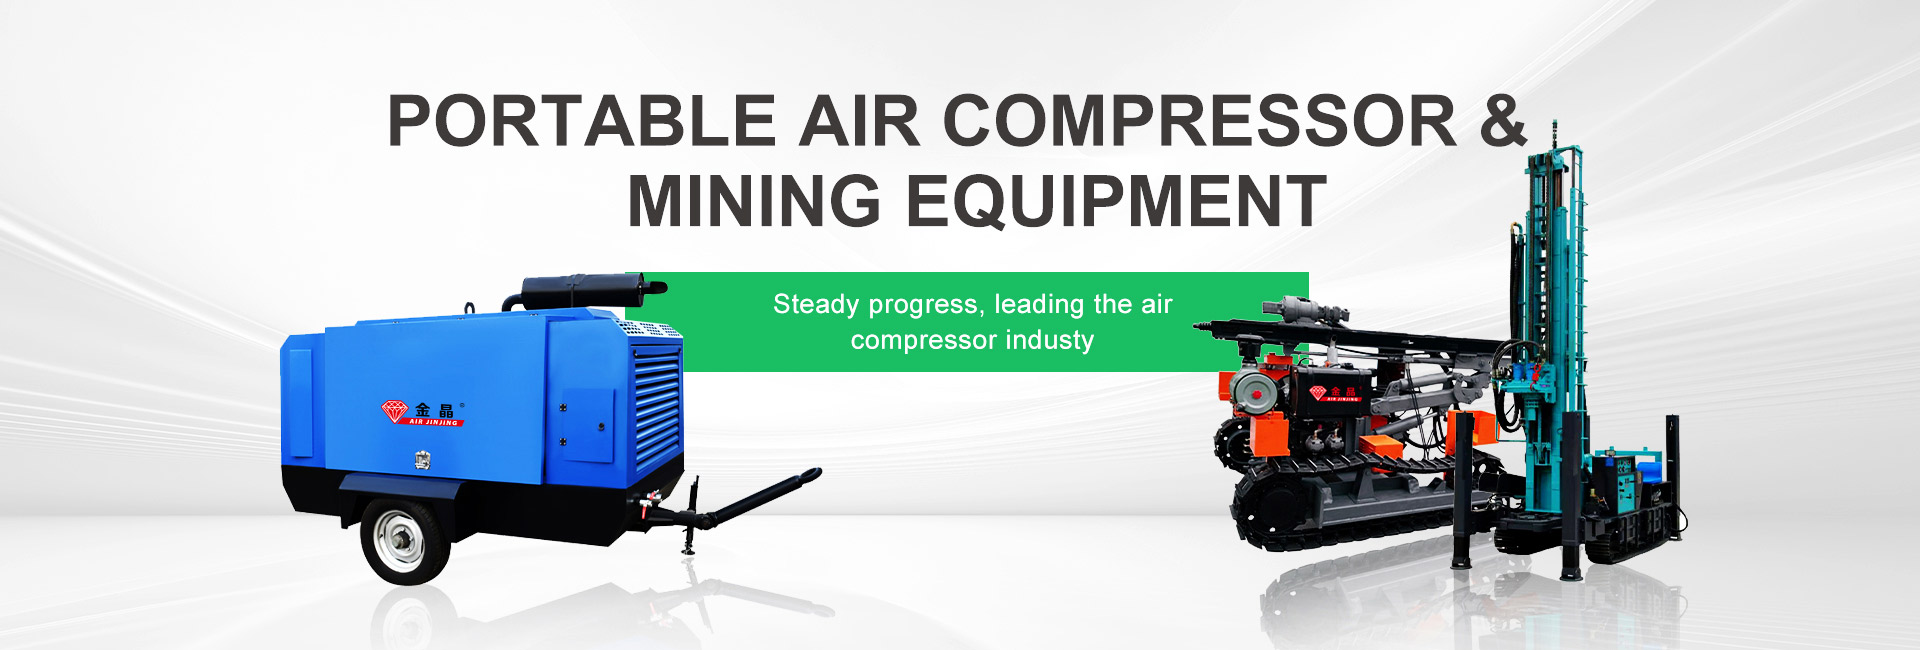 Portable Air Compressor & Mining Equipment